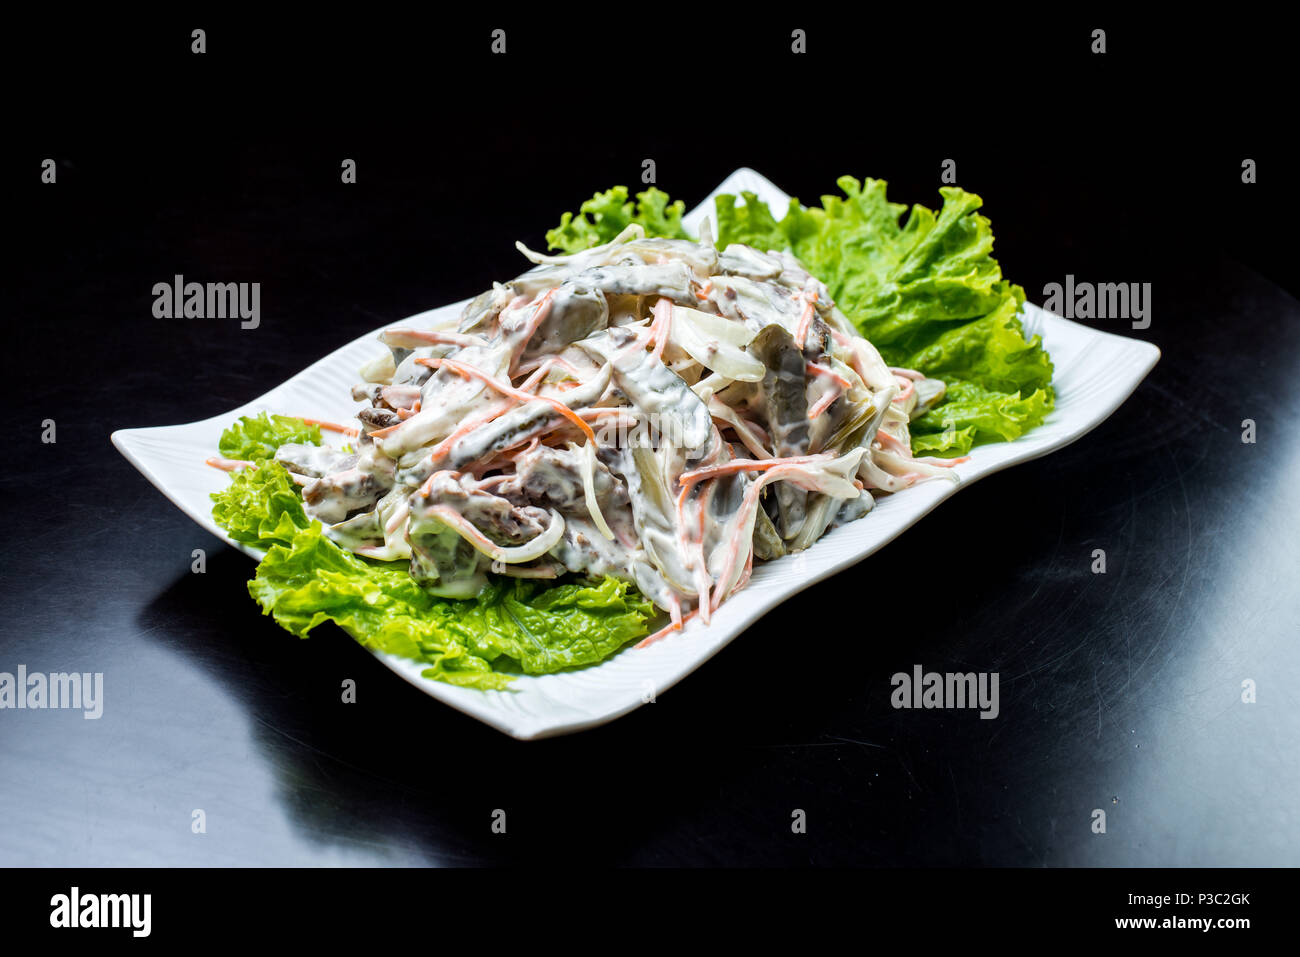 La cucina cinese, con insalata di funghi, carni bovine fritto, sottaceti, lattuga in una piastra bianca su sfondo nero Foto Stock